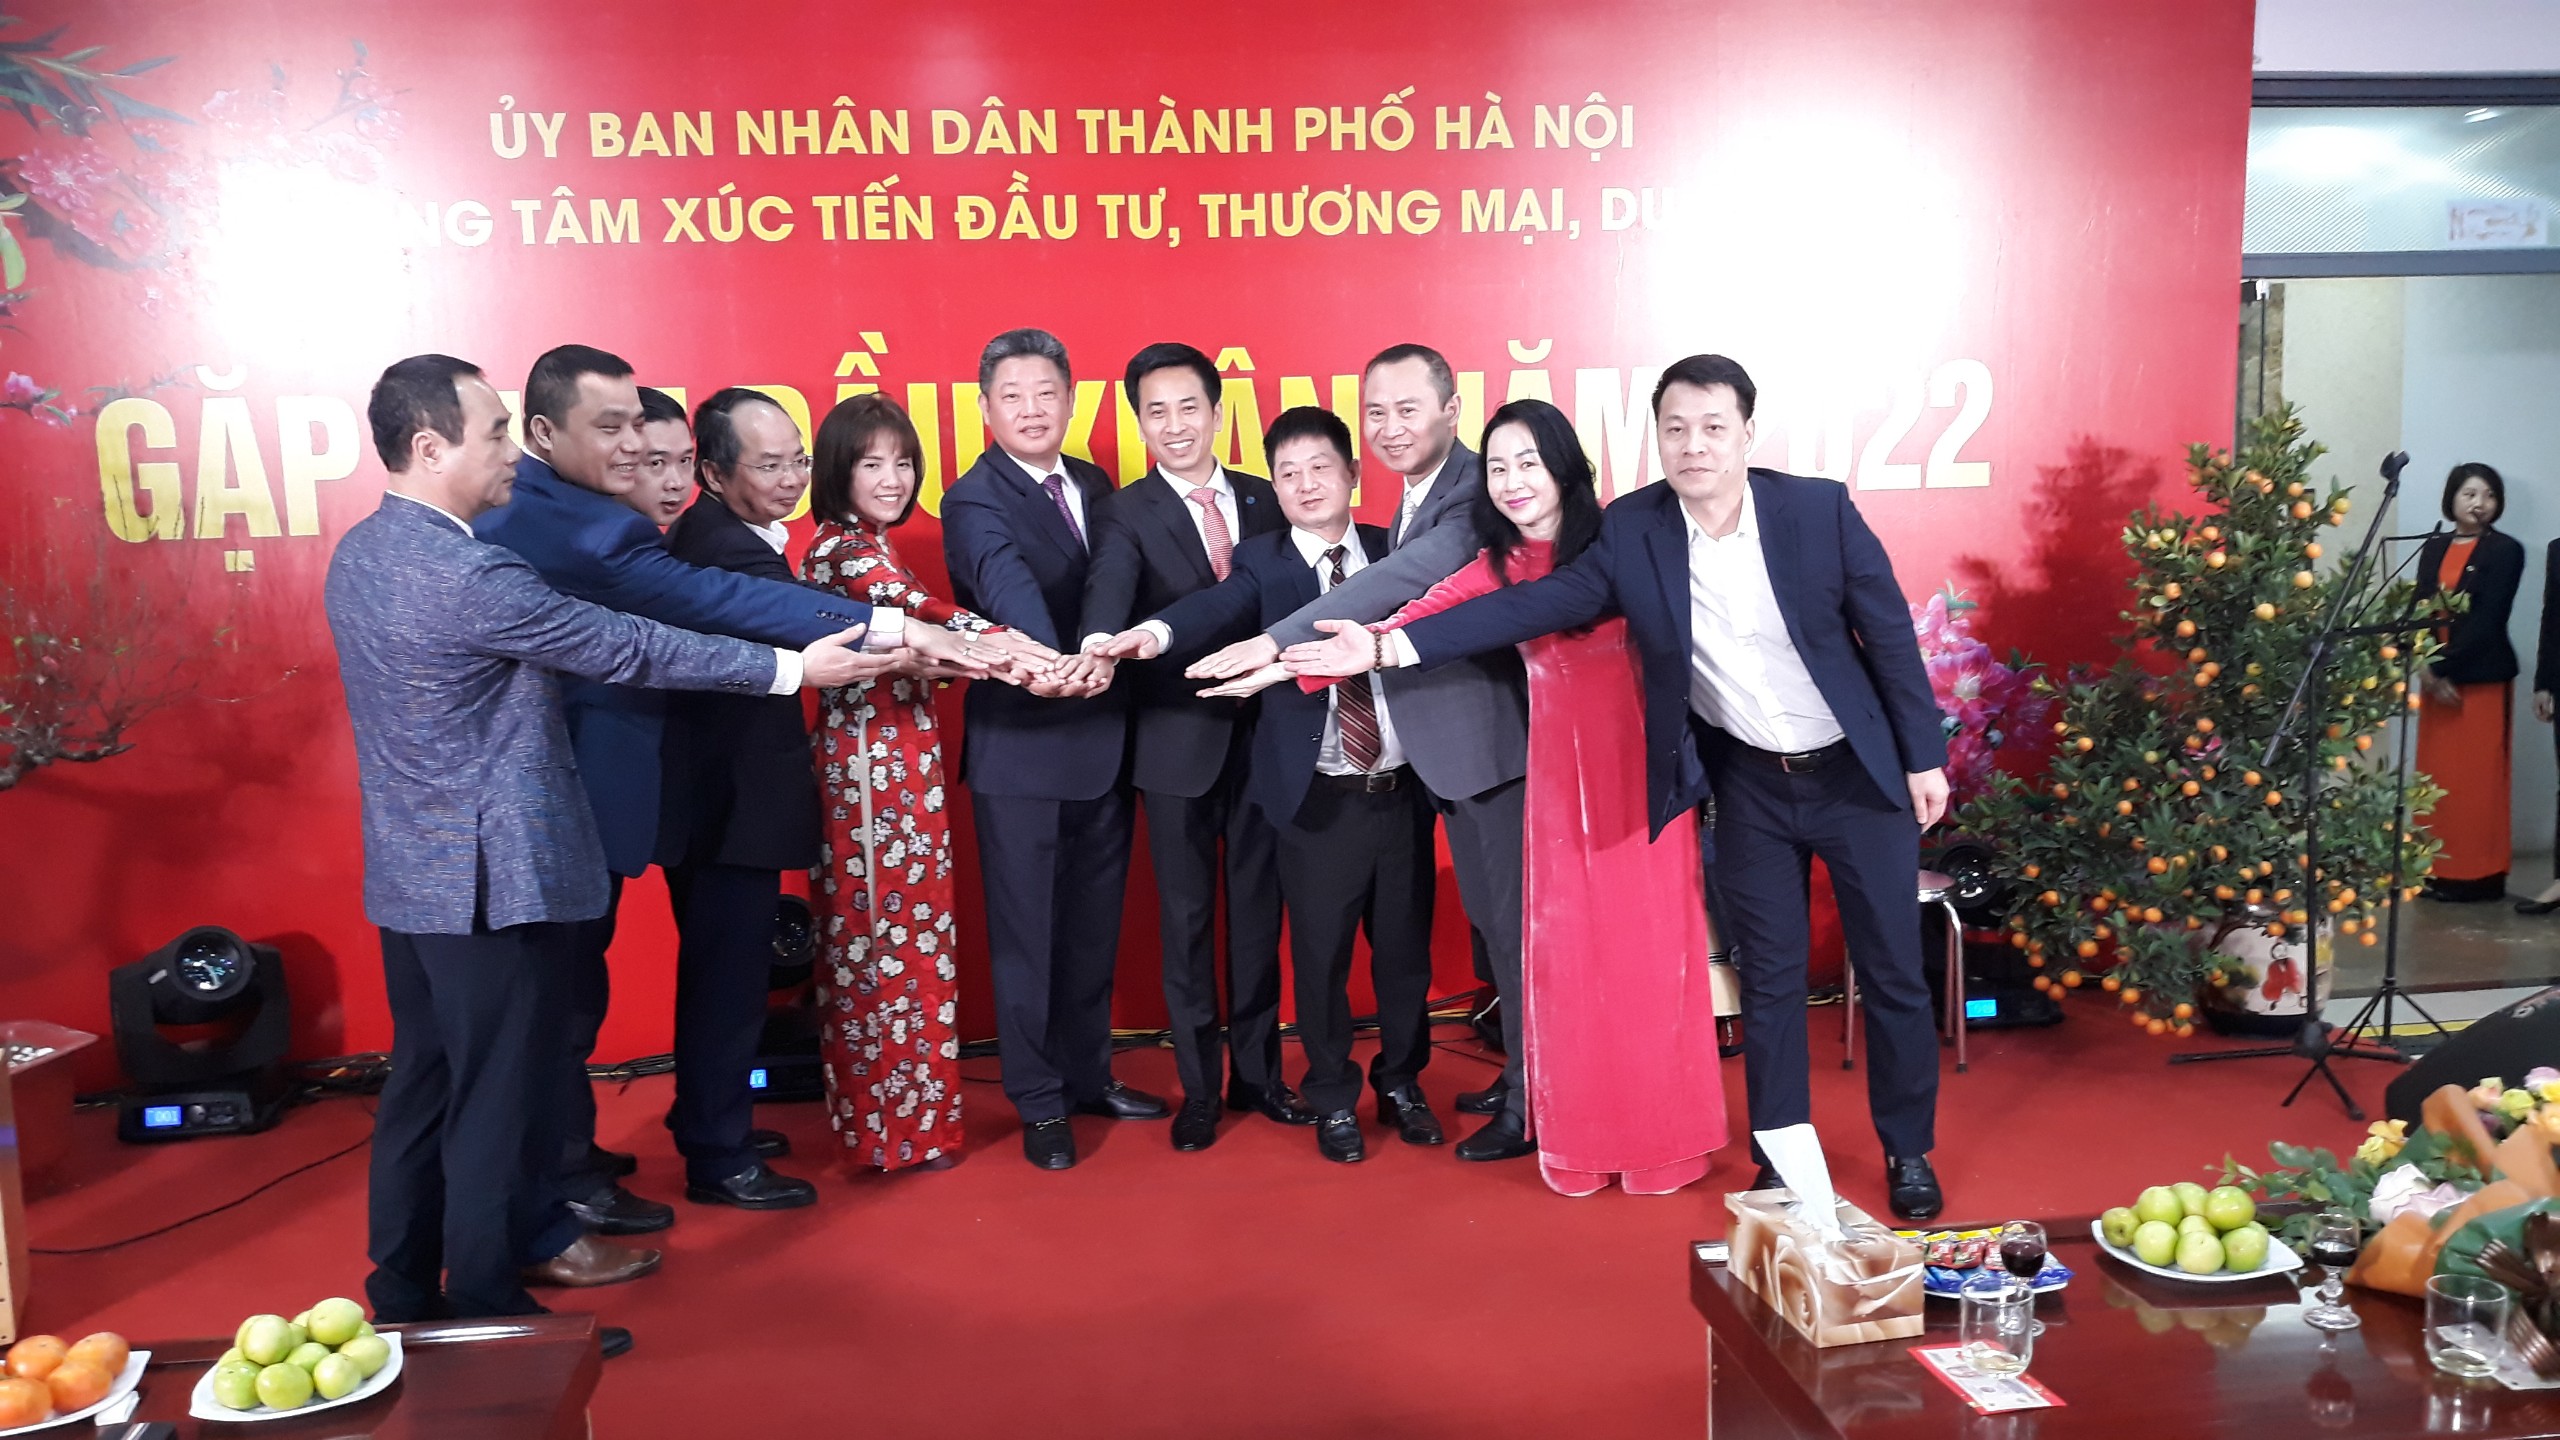 Phó Chủ tịch UBND TP. Hà Nội Nguyễn Mạnh Quyền làm việc với Trung tâm Xúc tiến Đầu tư - Thương mại - Du lịch Hà Nội (HPA) về việc triển khai các hoạt động xúc tiến trong năm 2022.